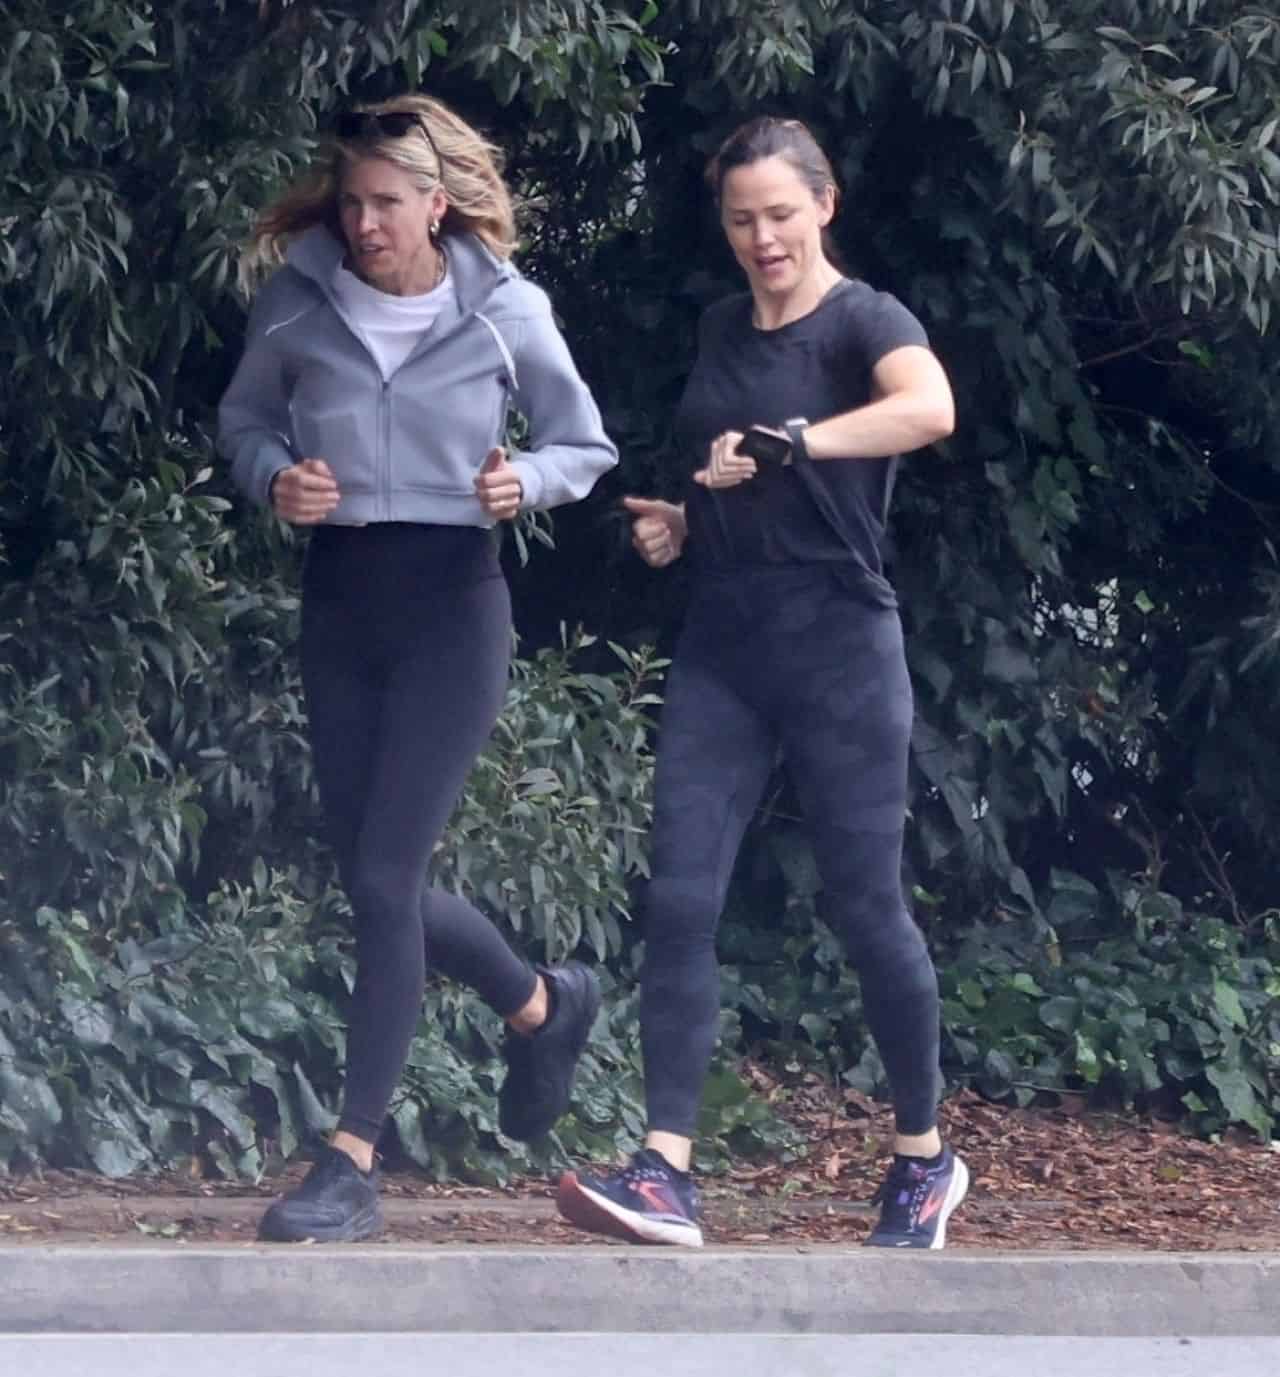 Jennifer Garner Doesn’t Let the Rain Stop Her Workout